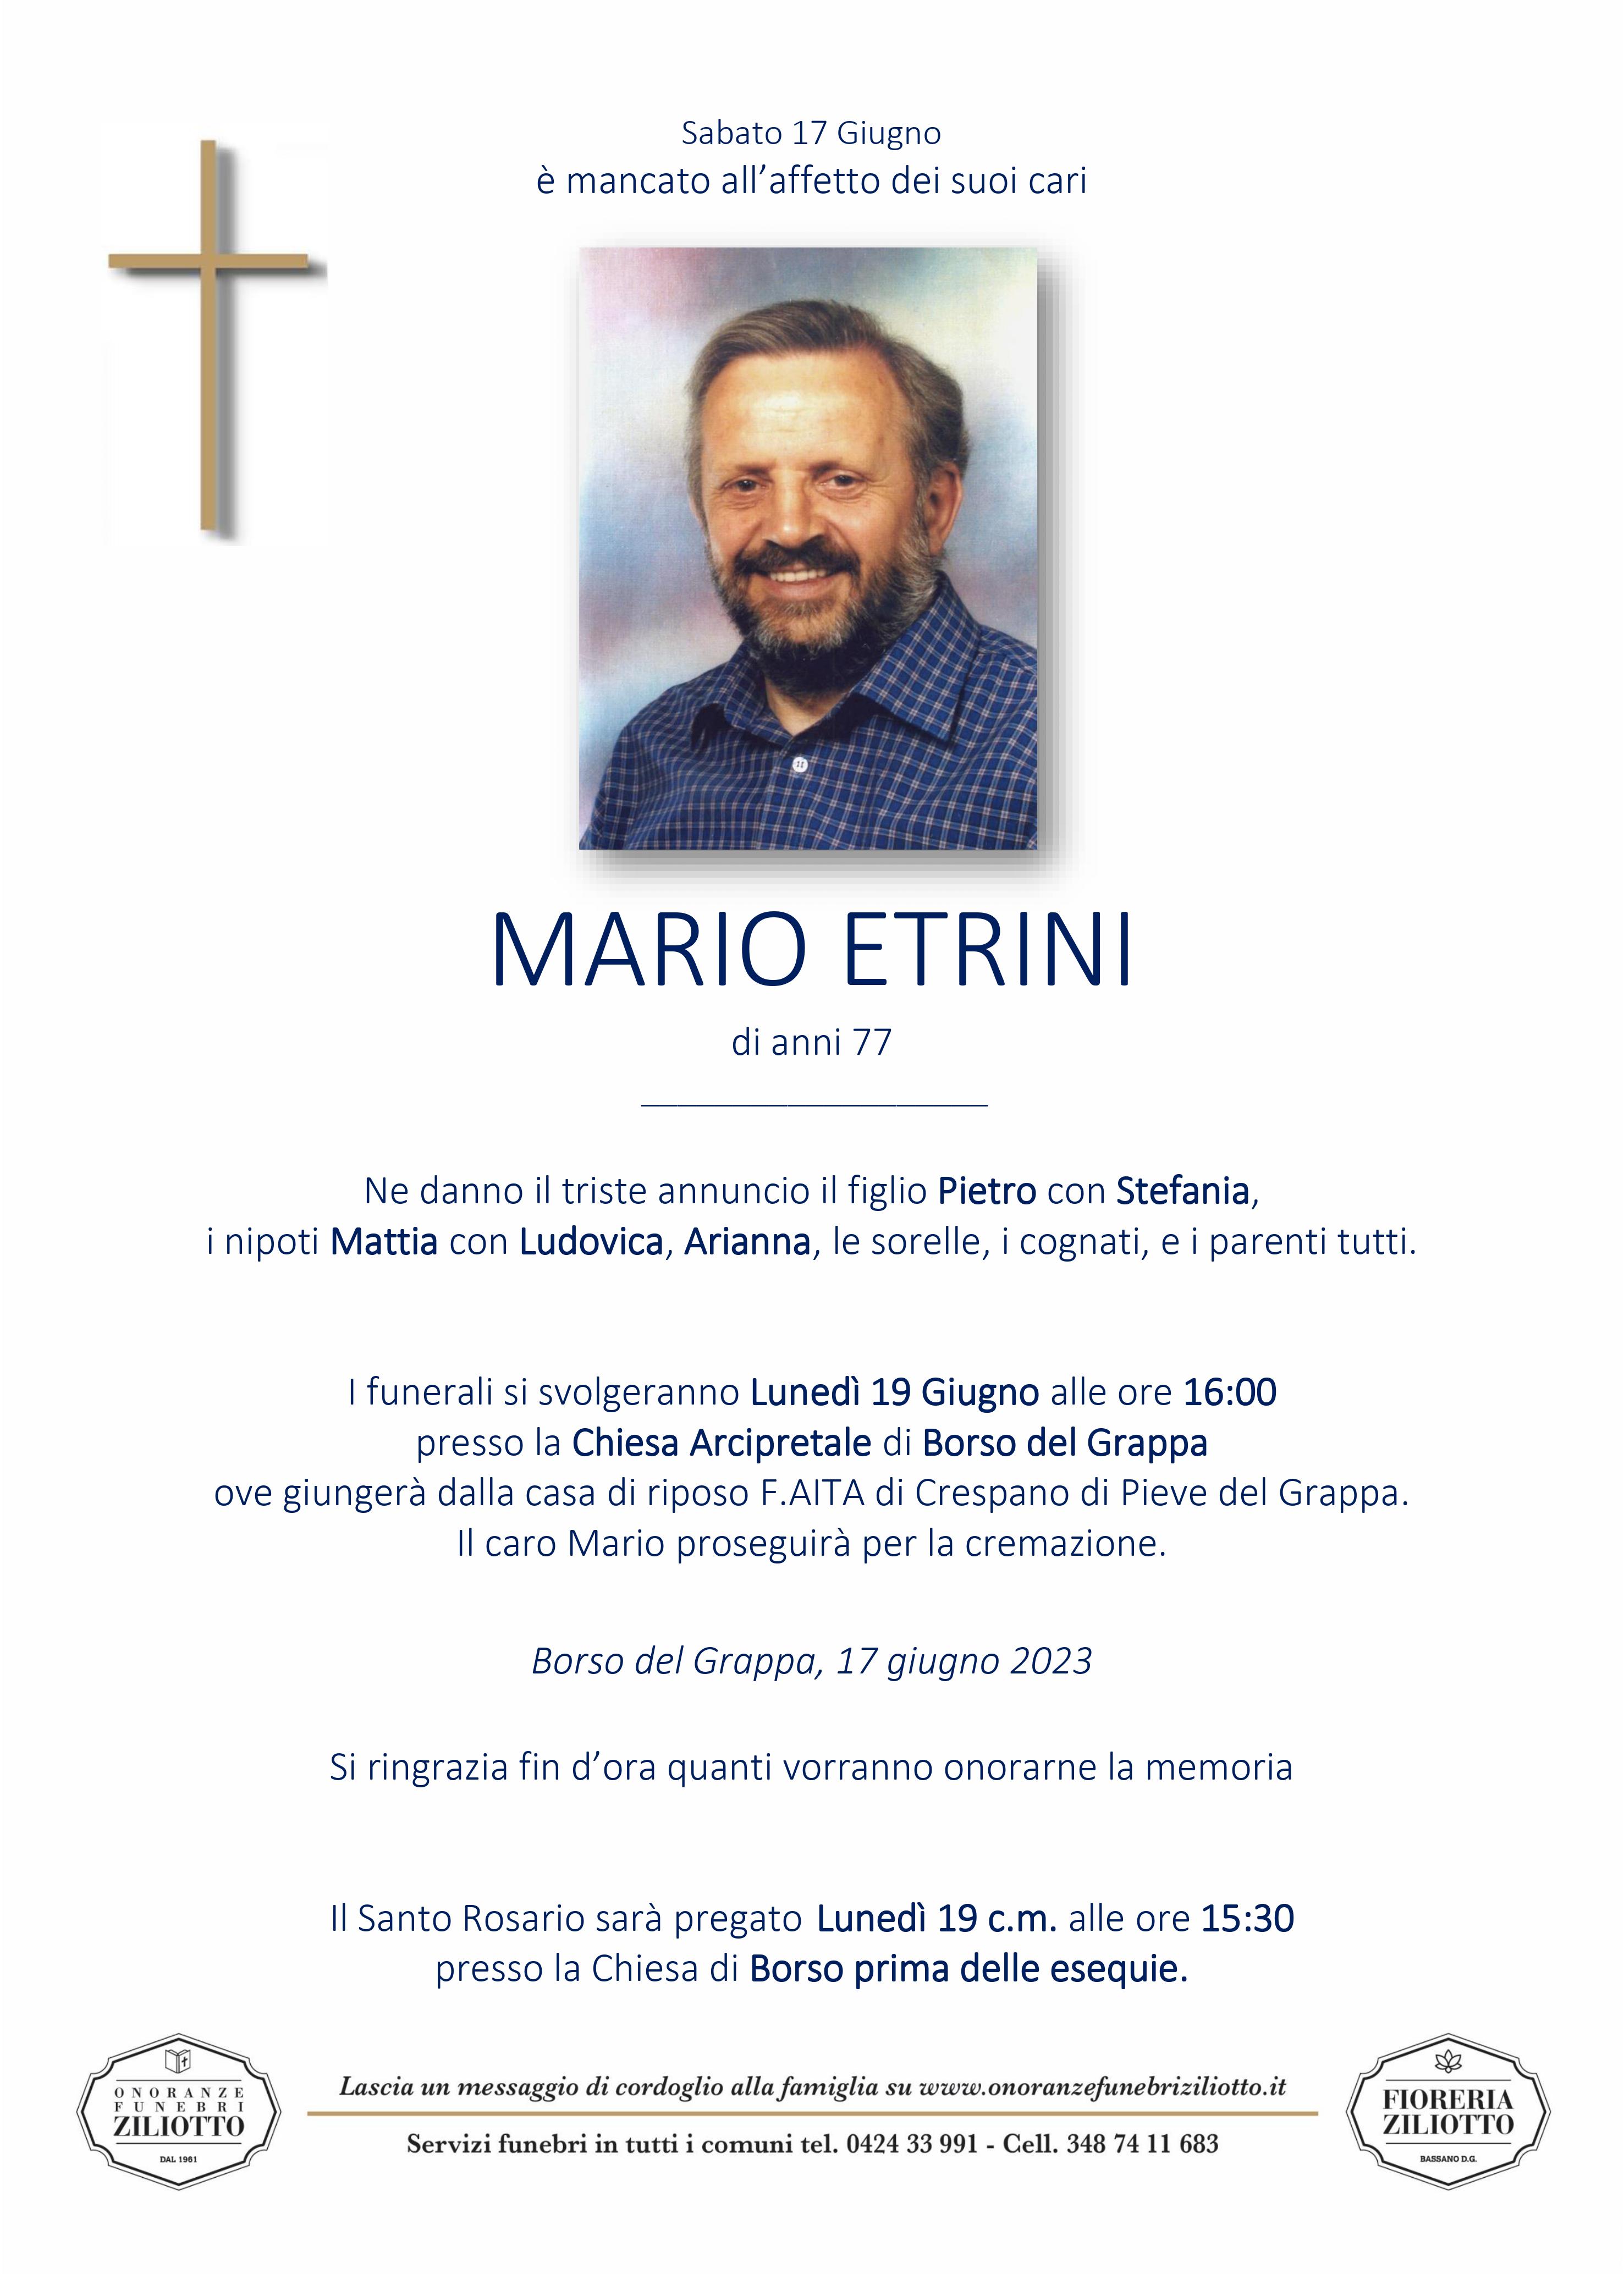 Mario Etrini - 77 anni - Borso del Grappa